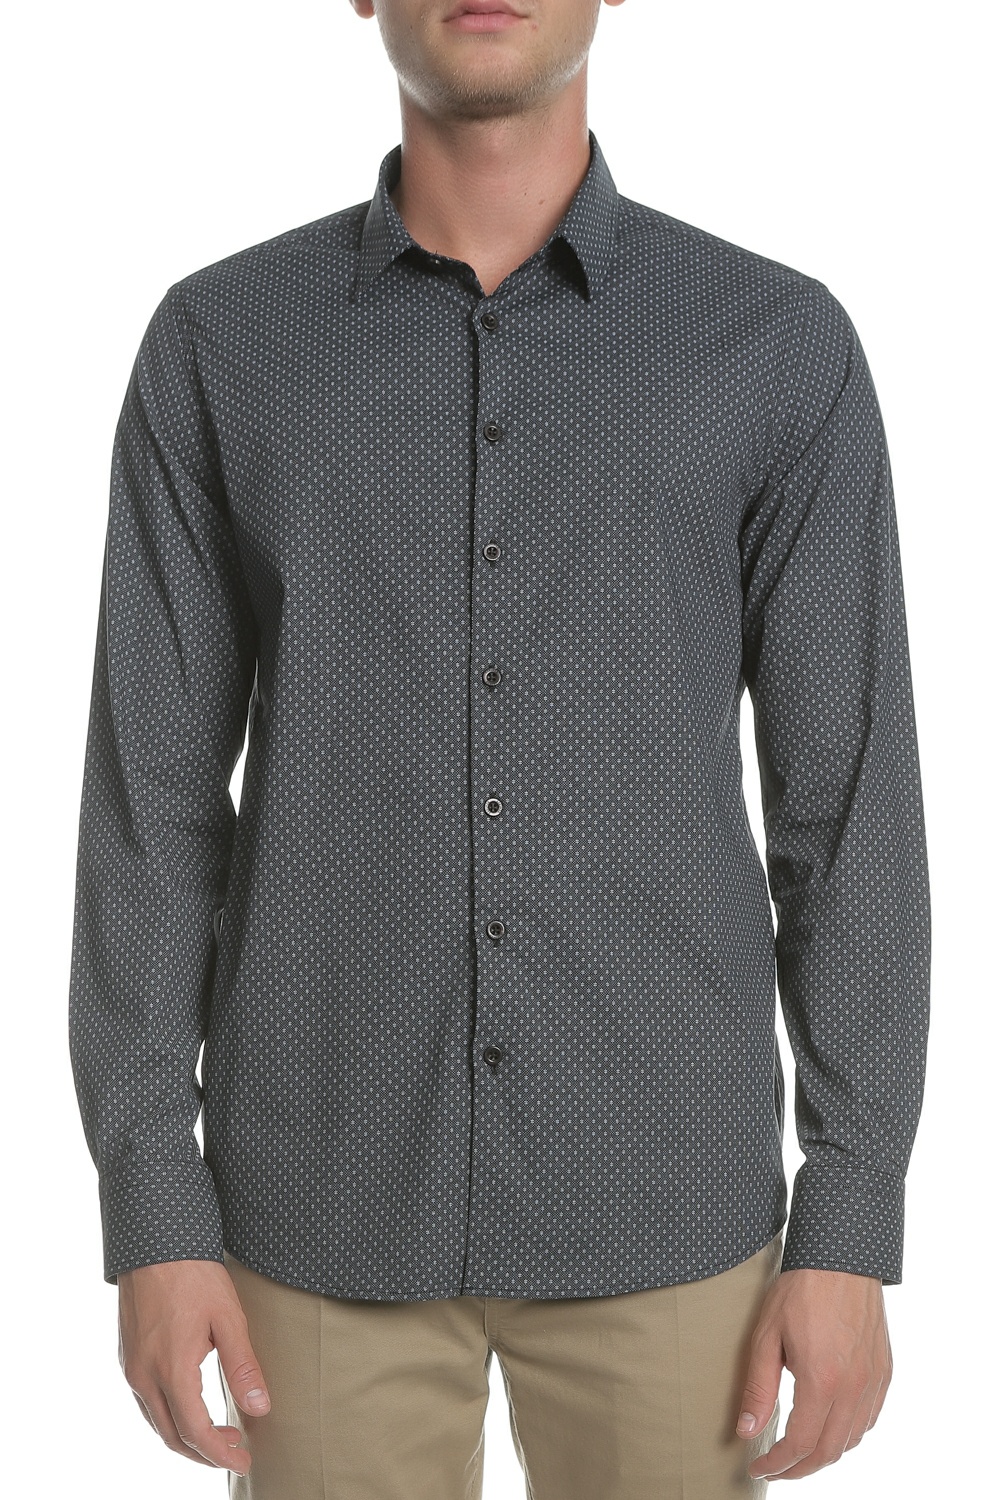 Ανδρικά/Ρούχα/Πουκάμισα/Μακρυμάνικα SSEINSE - Ανδρικό πουκάμισο SSEINSE ανθρακί